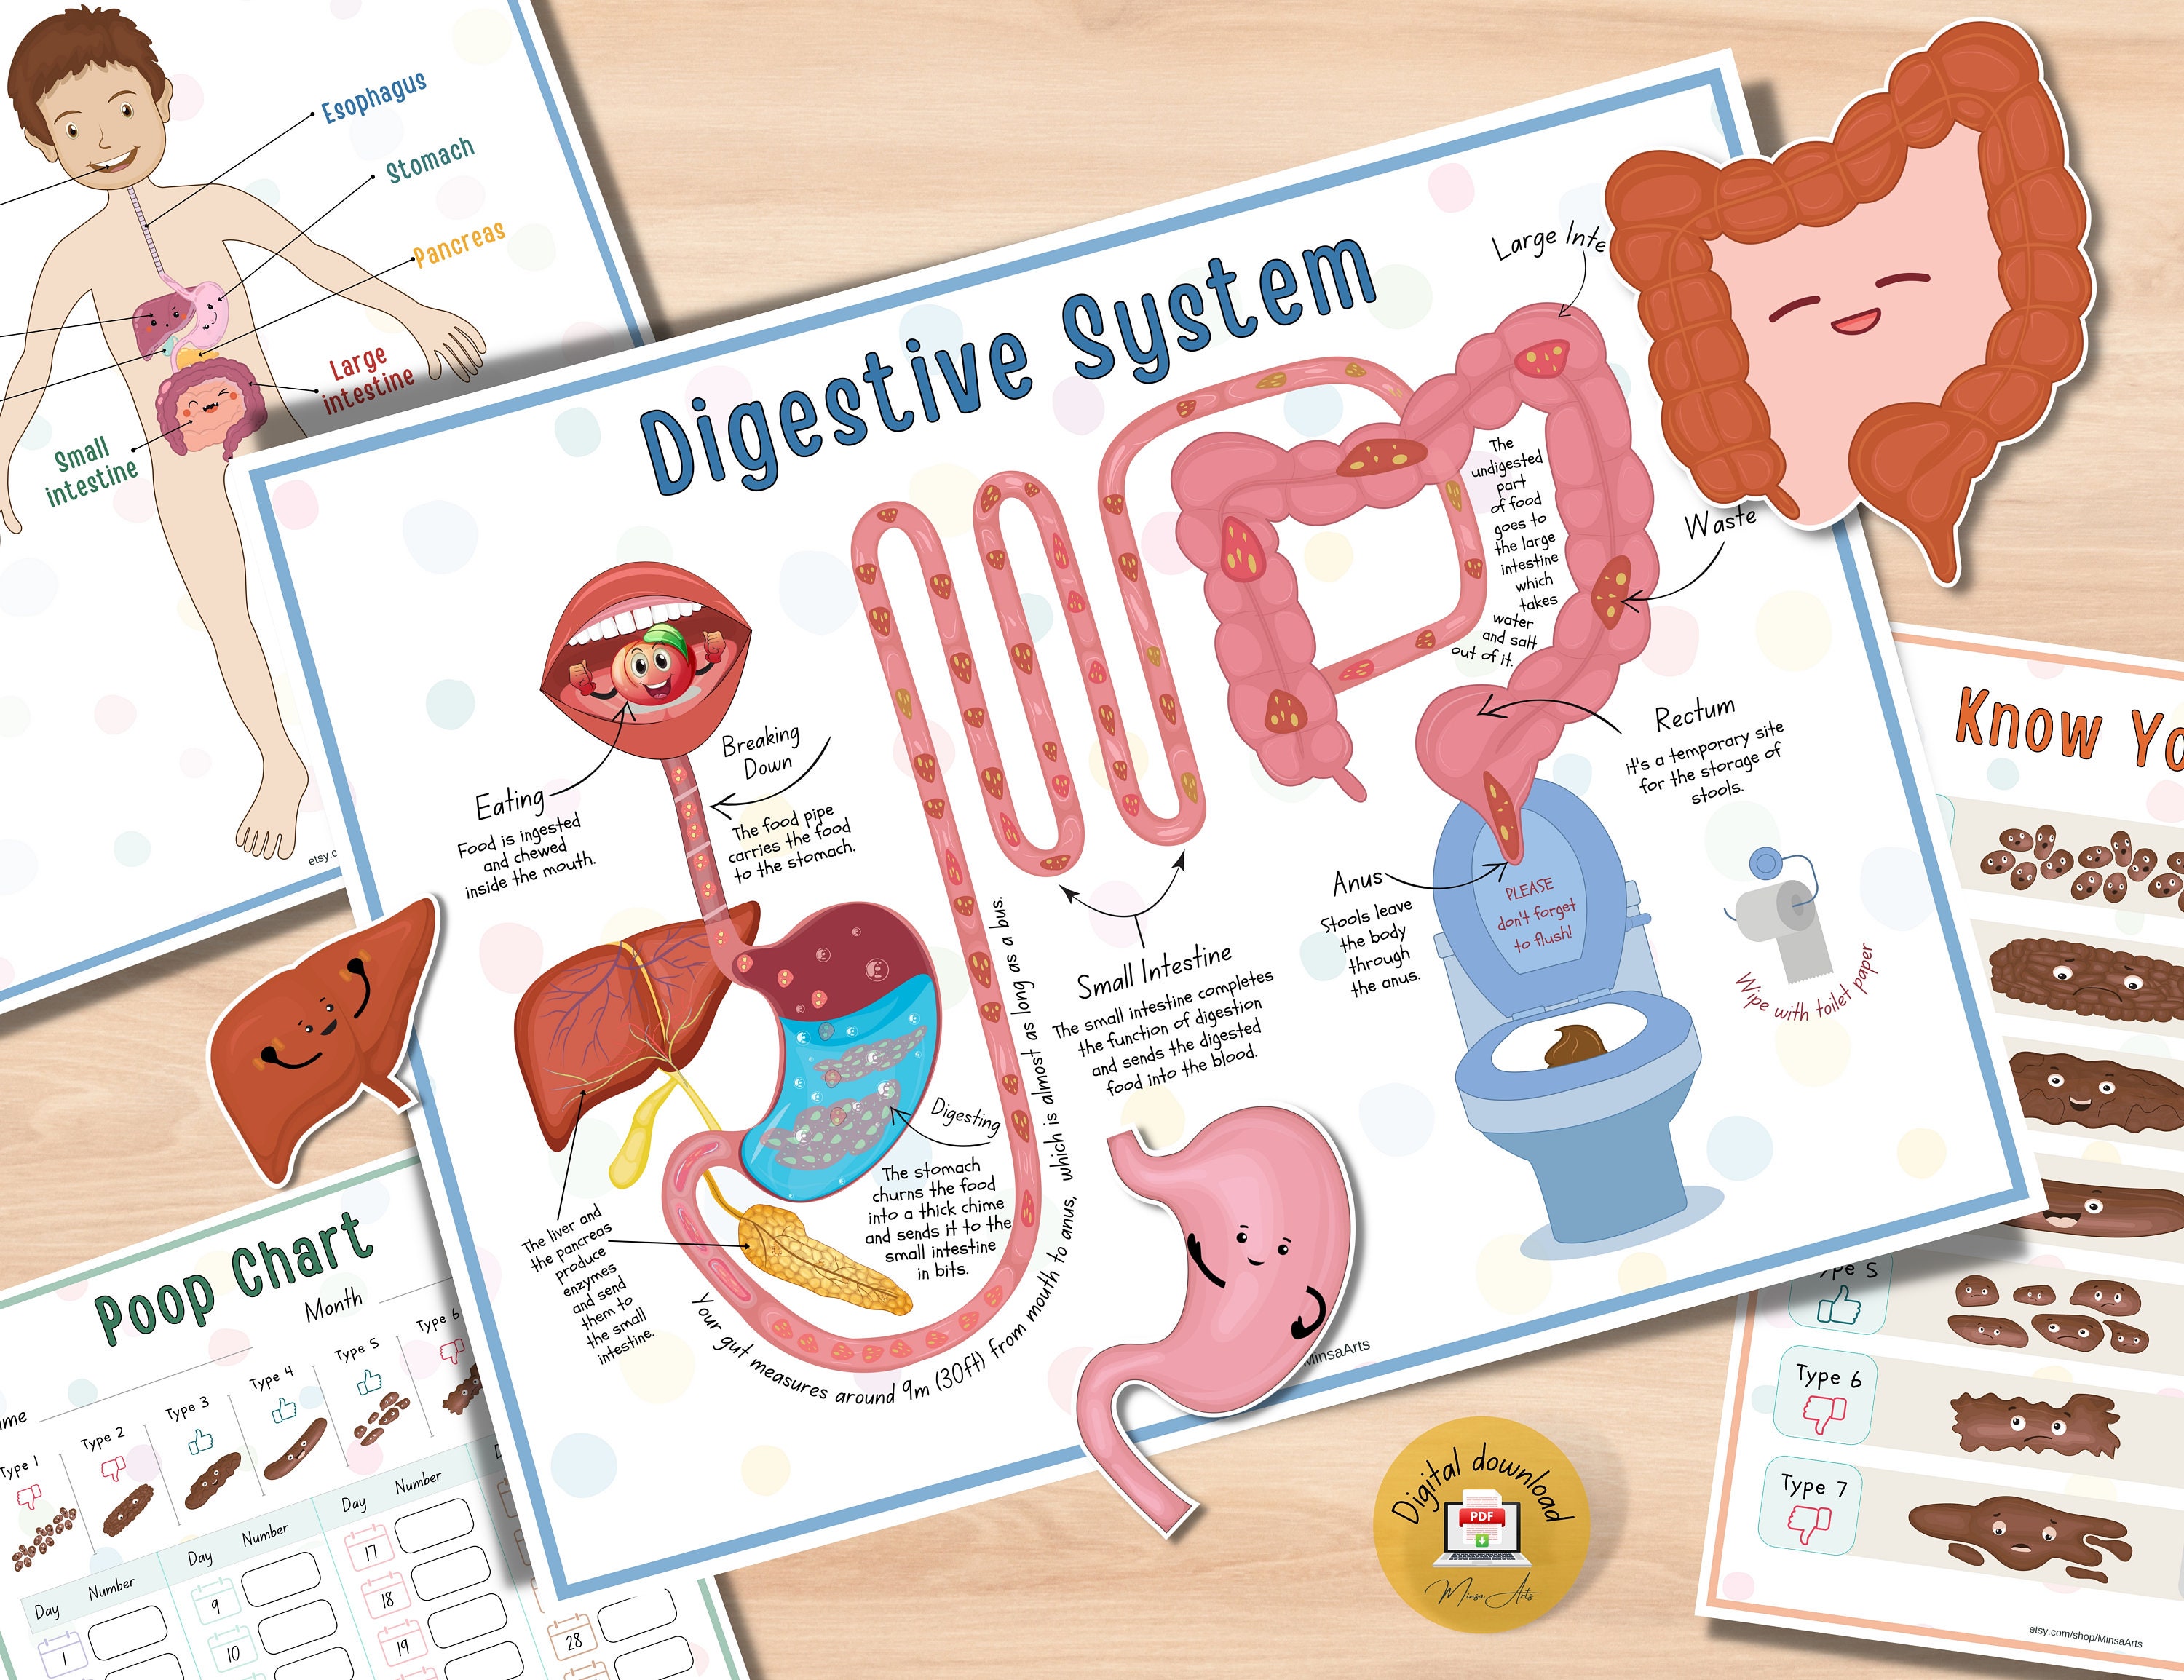 Digestive system diagram | Digestive system, Digestive system diagram,  Human digestive system